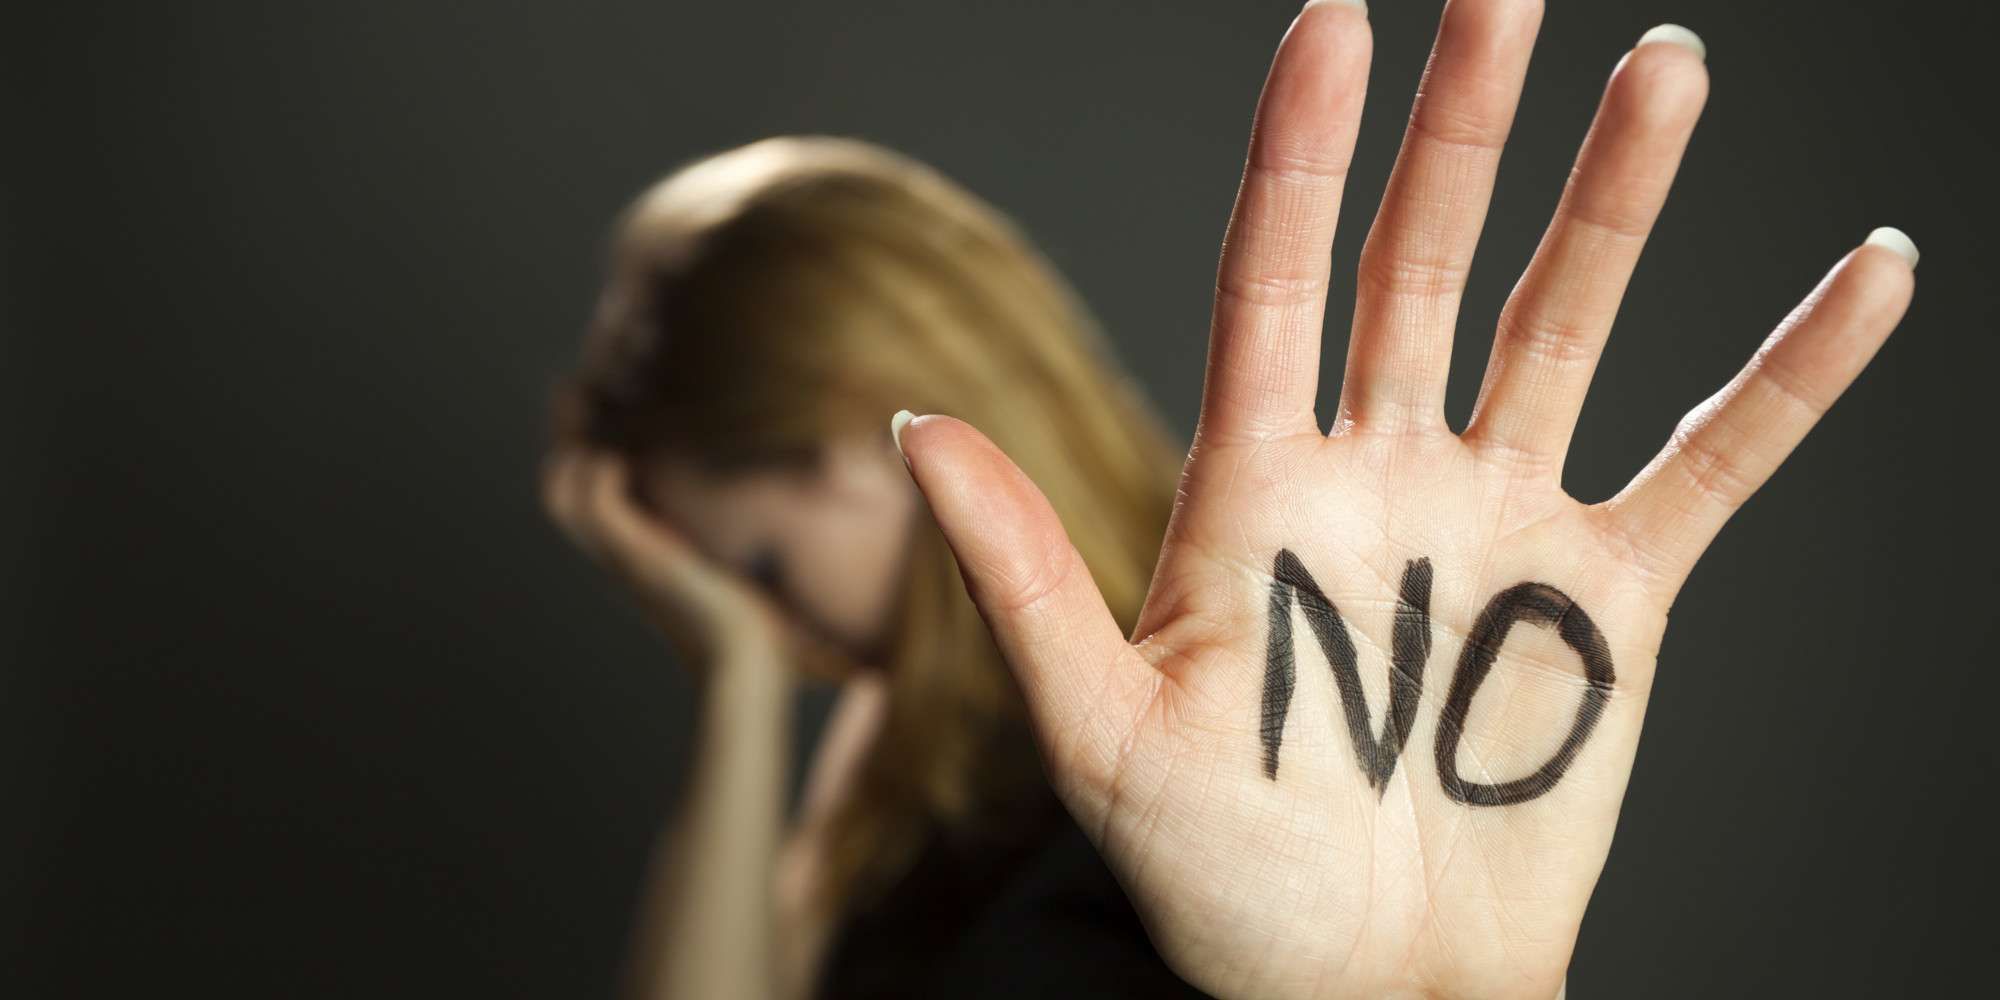 Έχουν ξεφύγει: Αλλοδαπός παρενόχλησε σεξουαλικά 20χρονη στα Χανιά – Της άρπαξε το κινητό για να της στείλει μηνύματα!